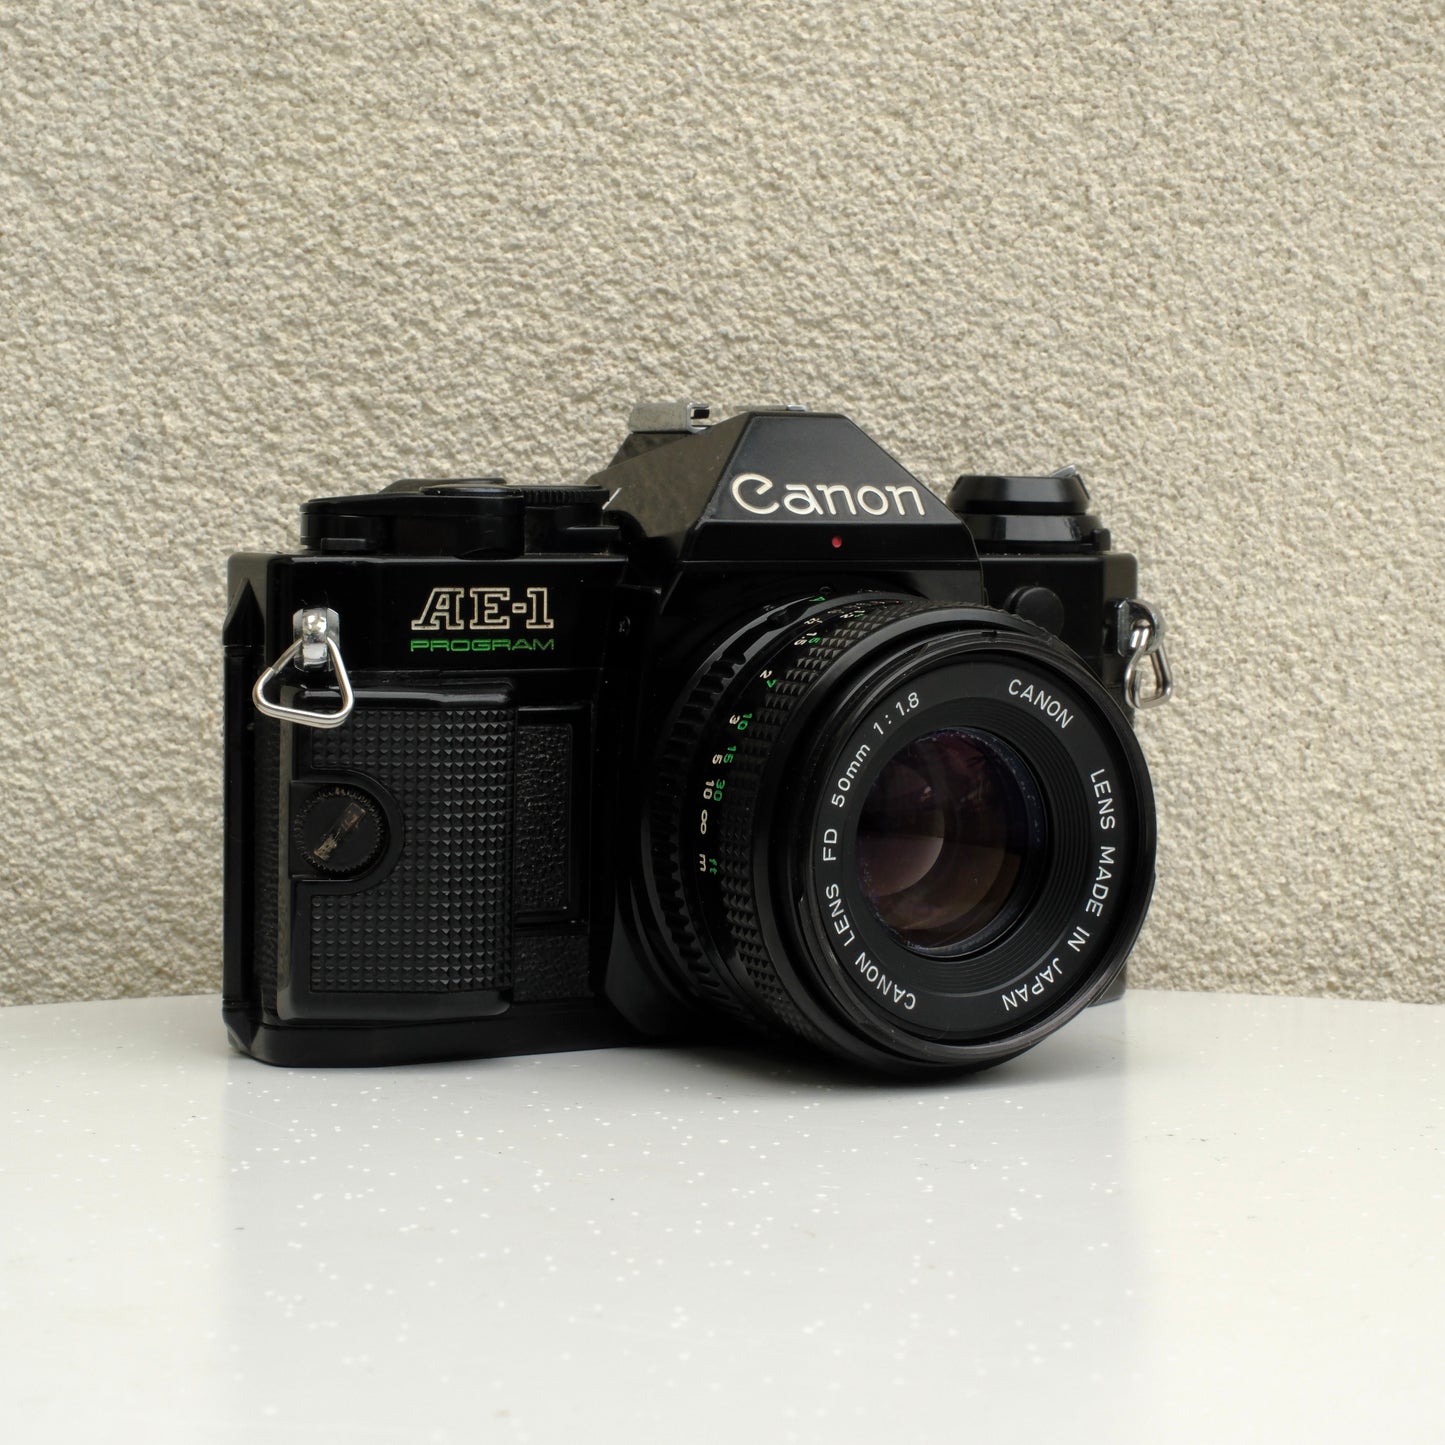 Canon AE-1 Program (50mm f/1.4 lens)